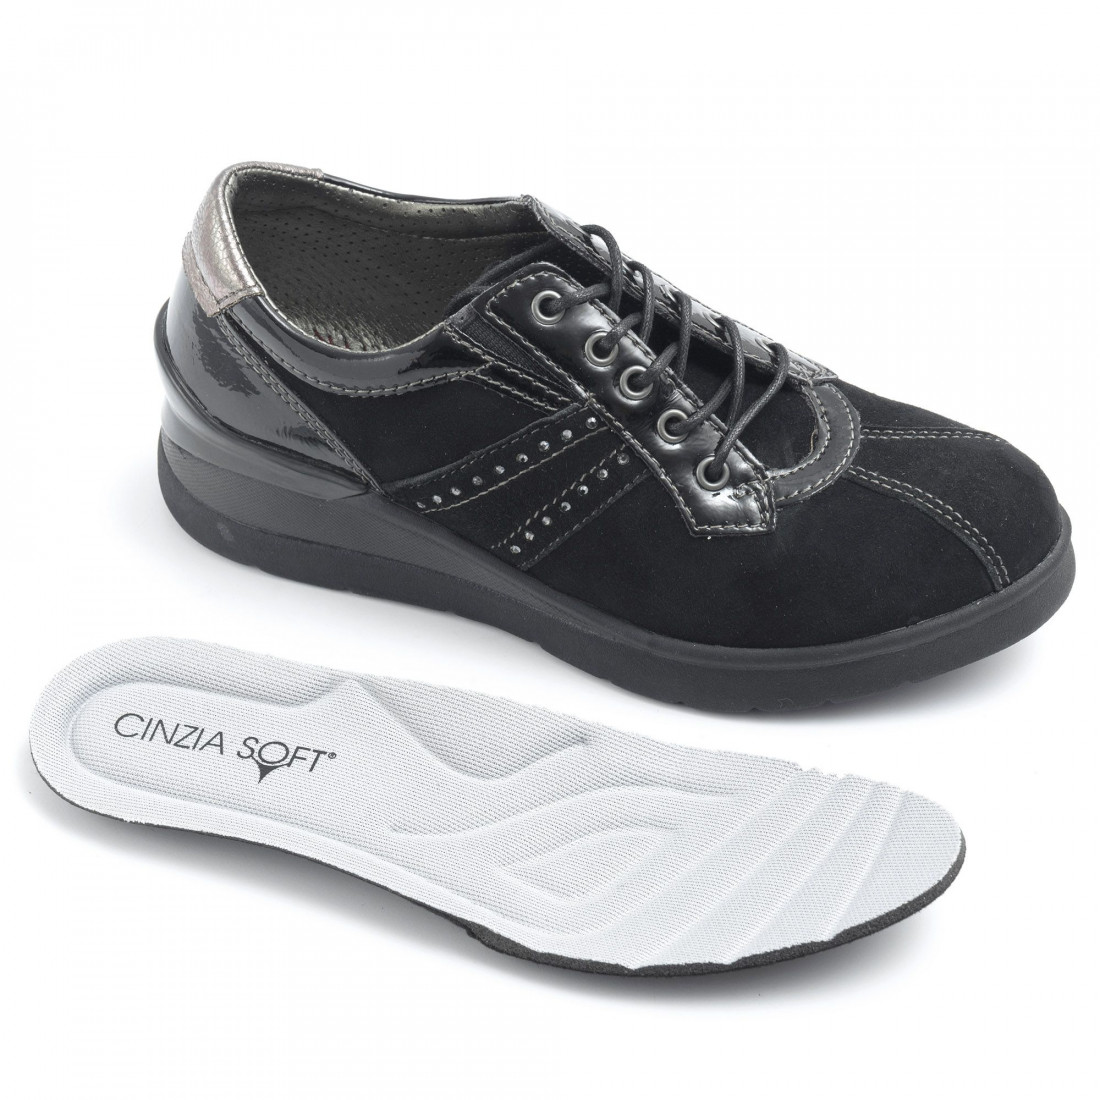 Women's Cinzia Soft black suede shoes